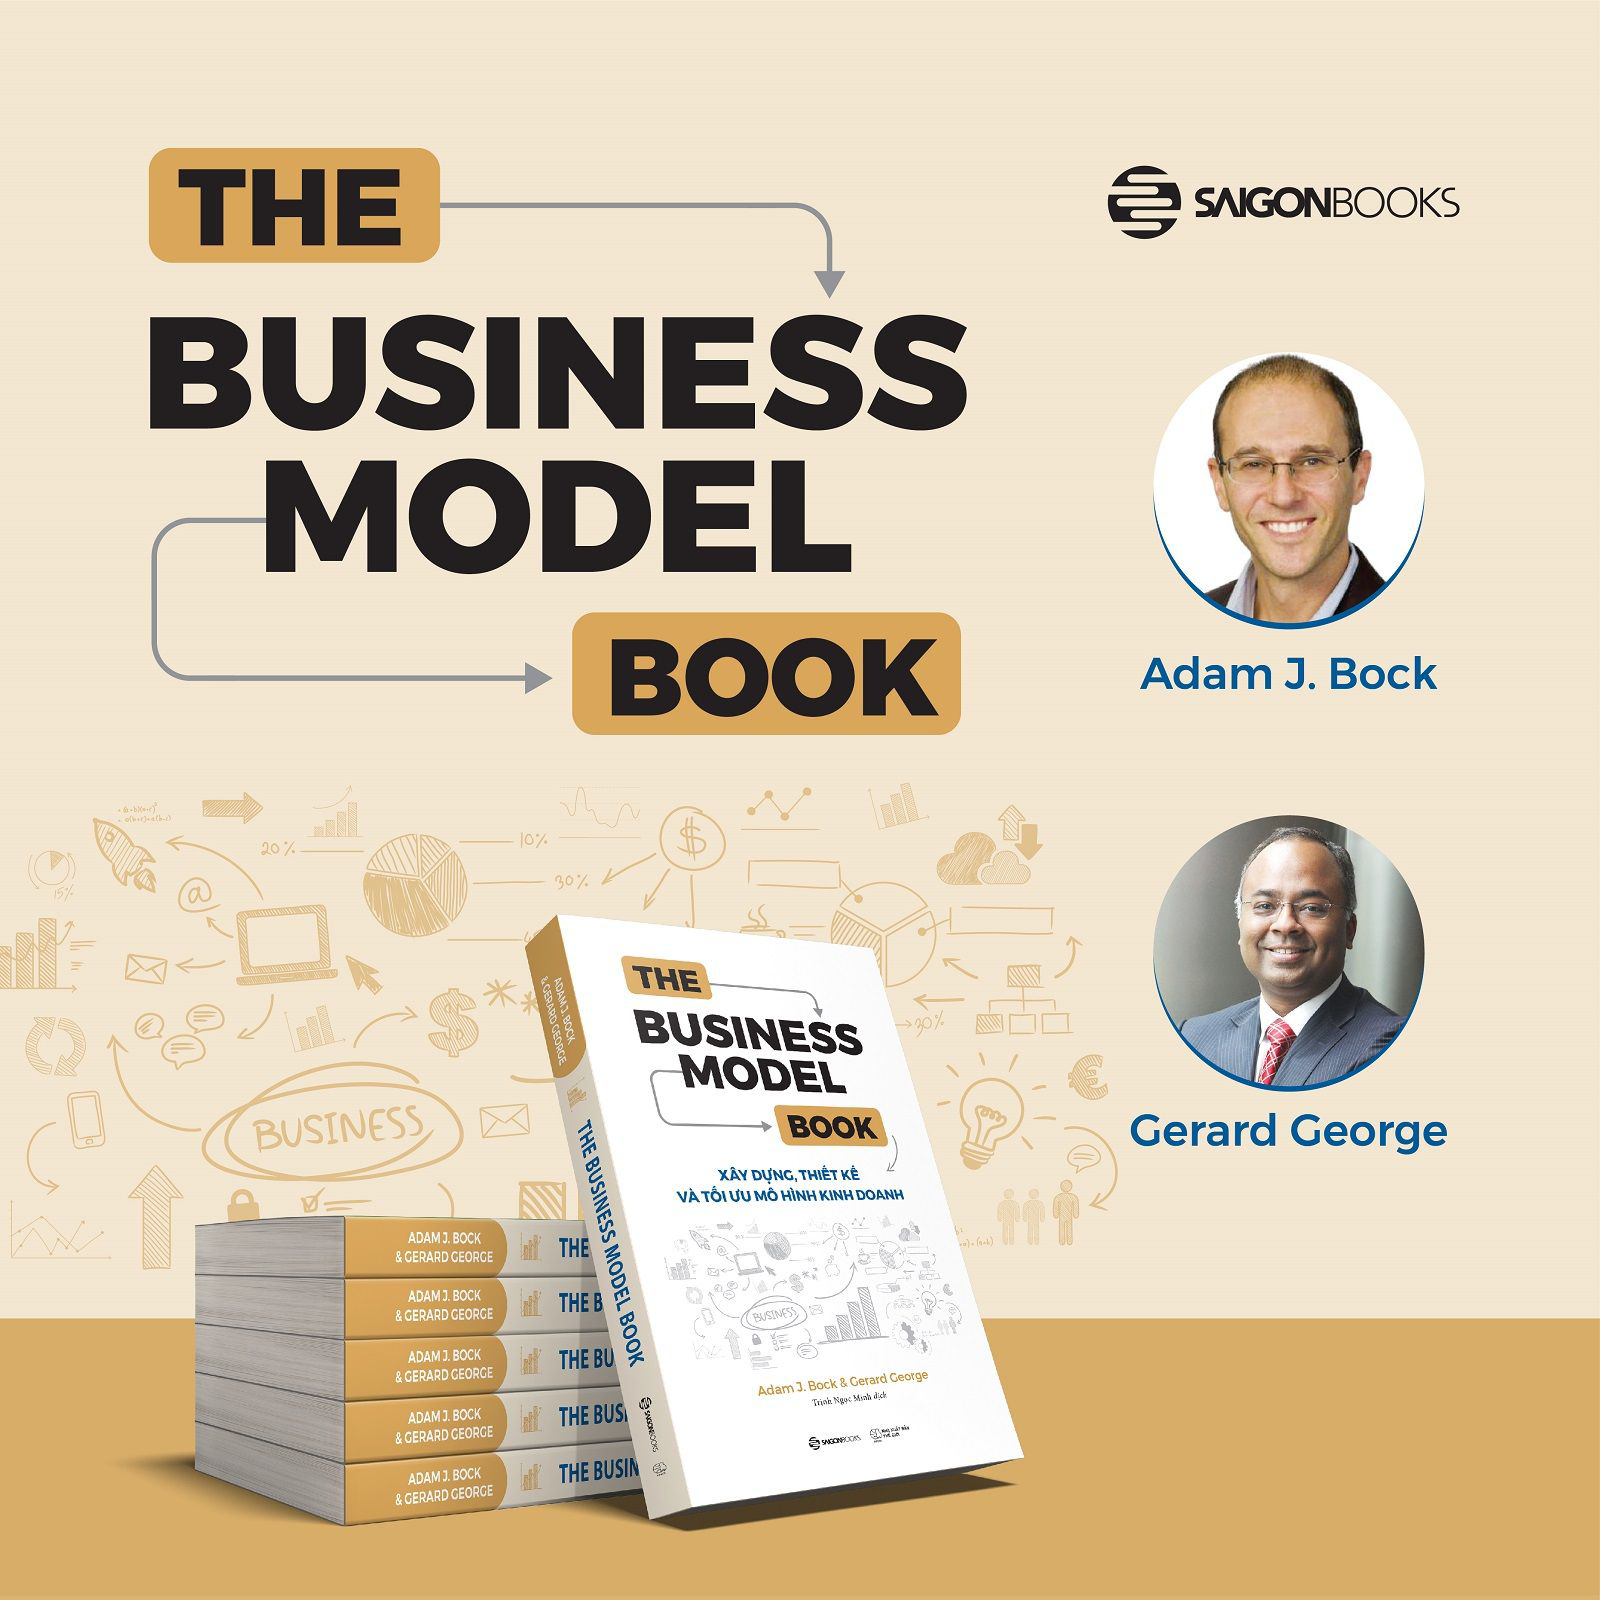 The Business Model Book: Xây dựng, Thiết kế và Tối ưu Mô hình kinh doanh